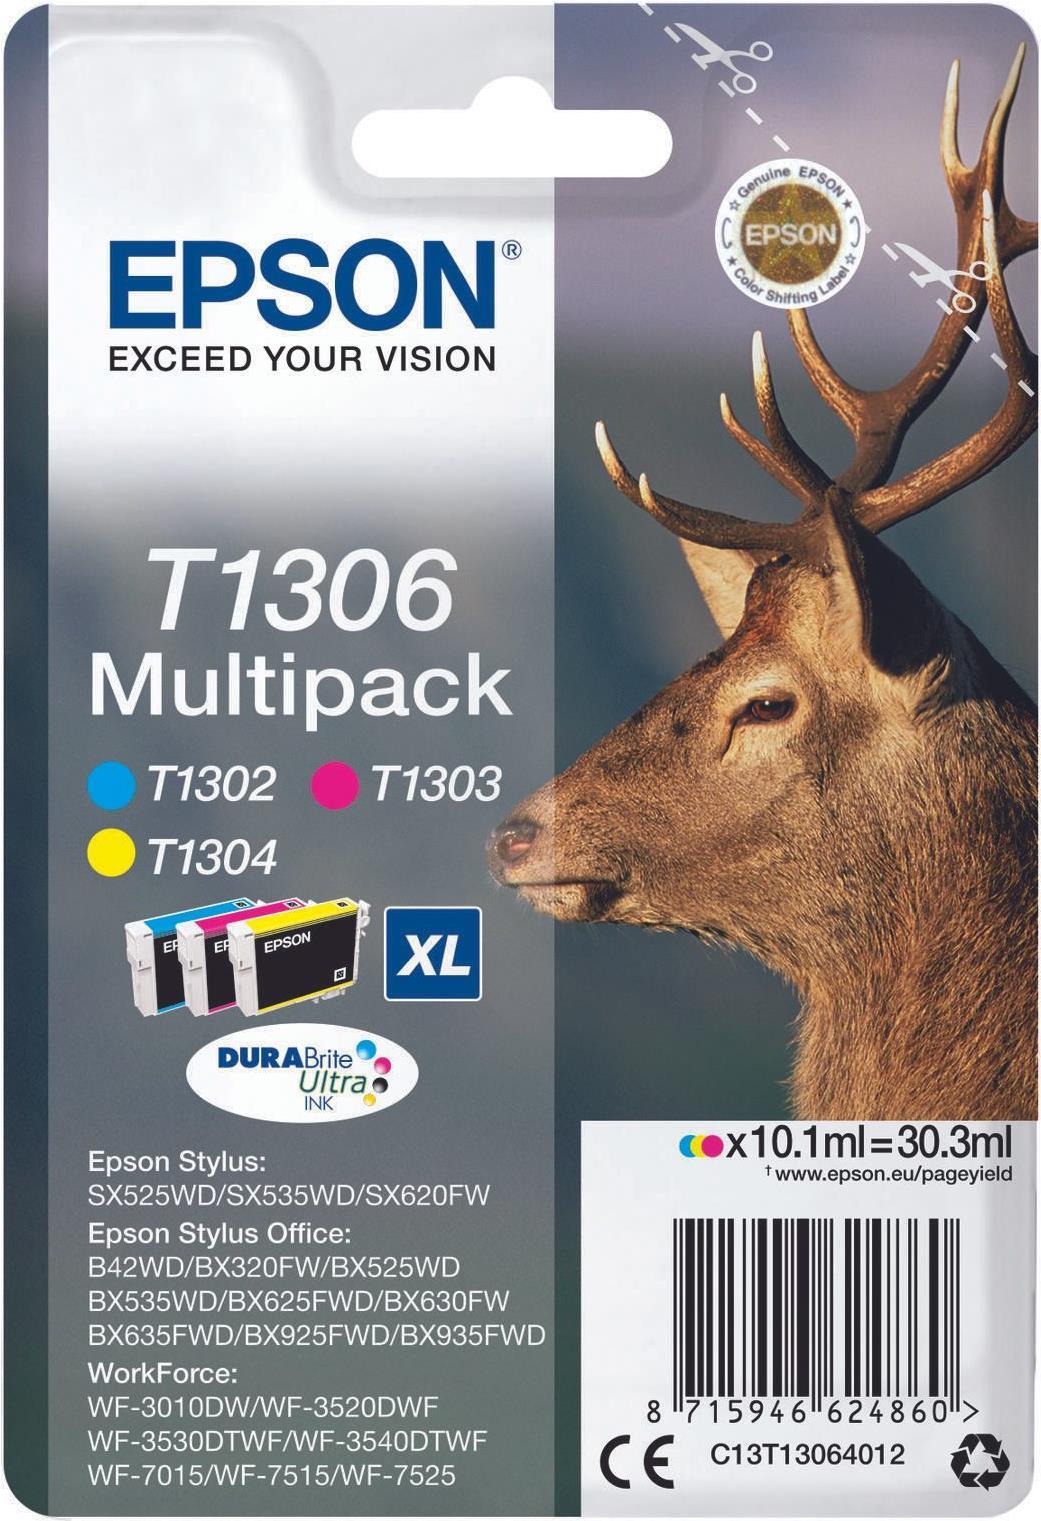 Epson T1306 Multipack